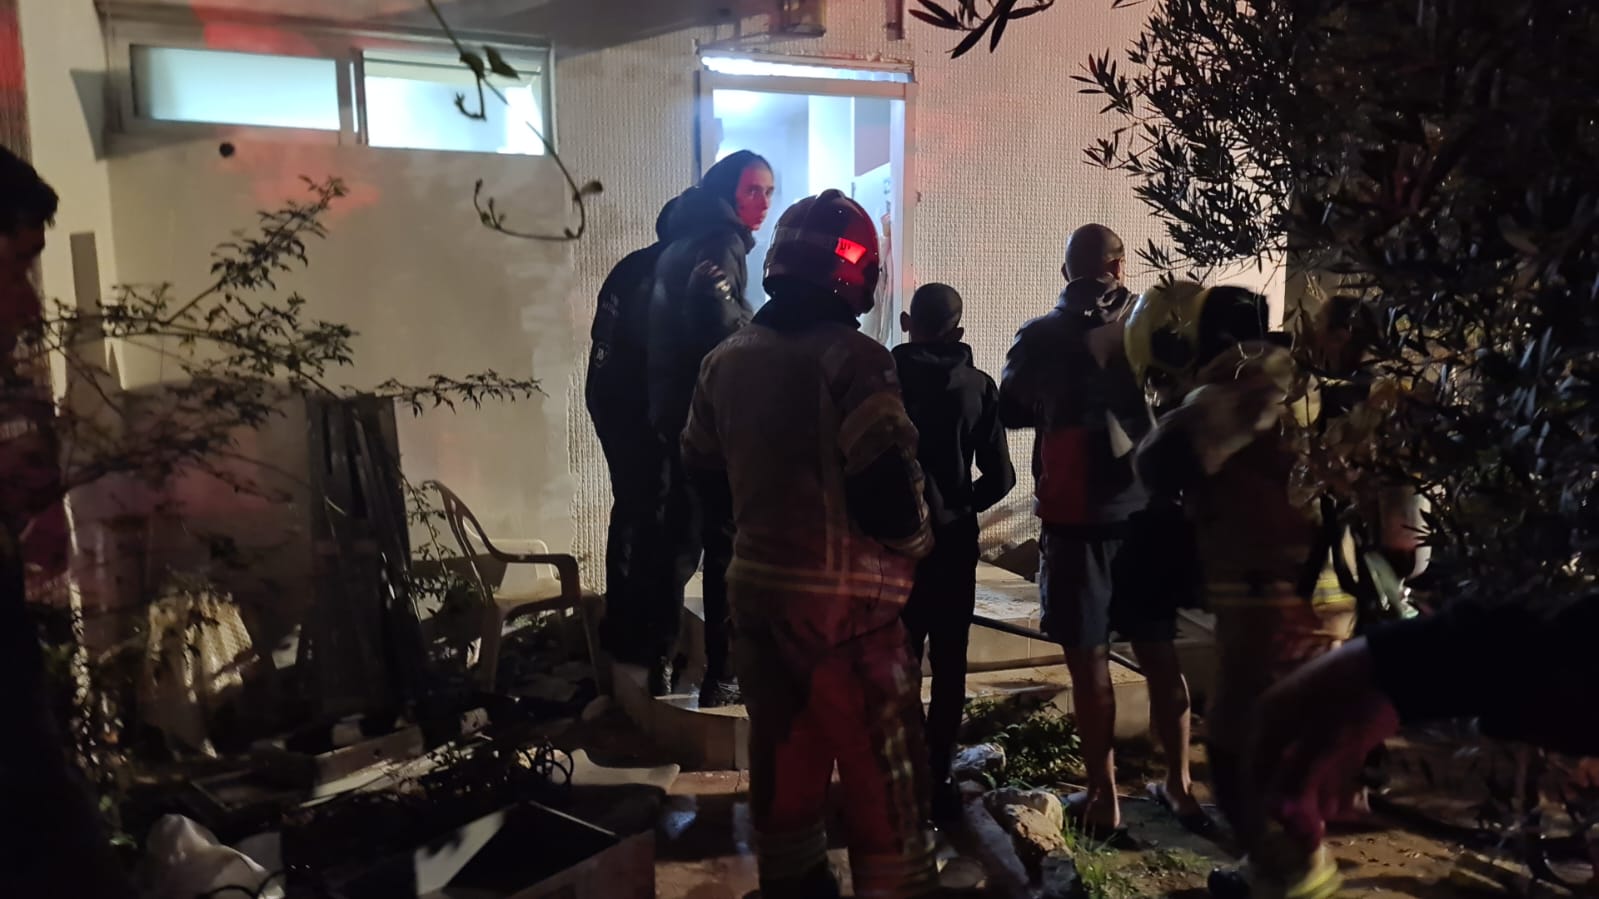 يافا: حريق داخل شقة سكنية في حي الجبلية في يافا دون إصابات